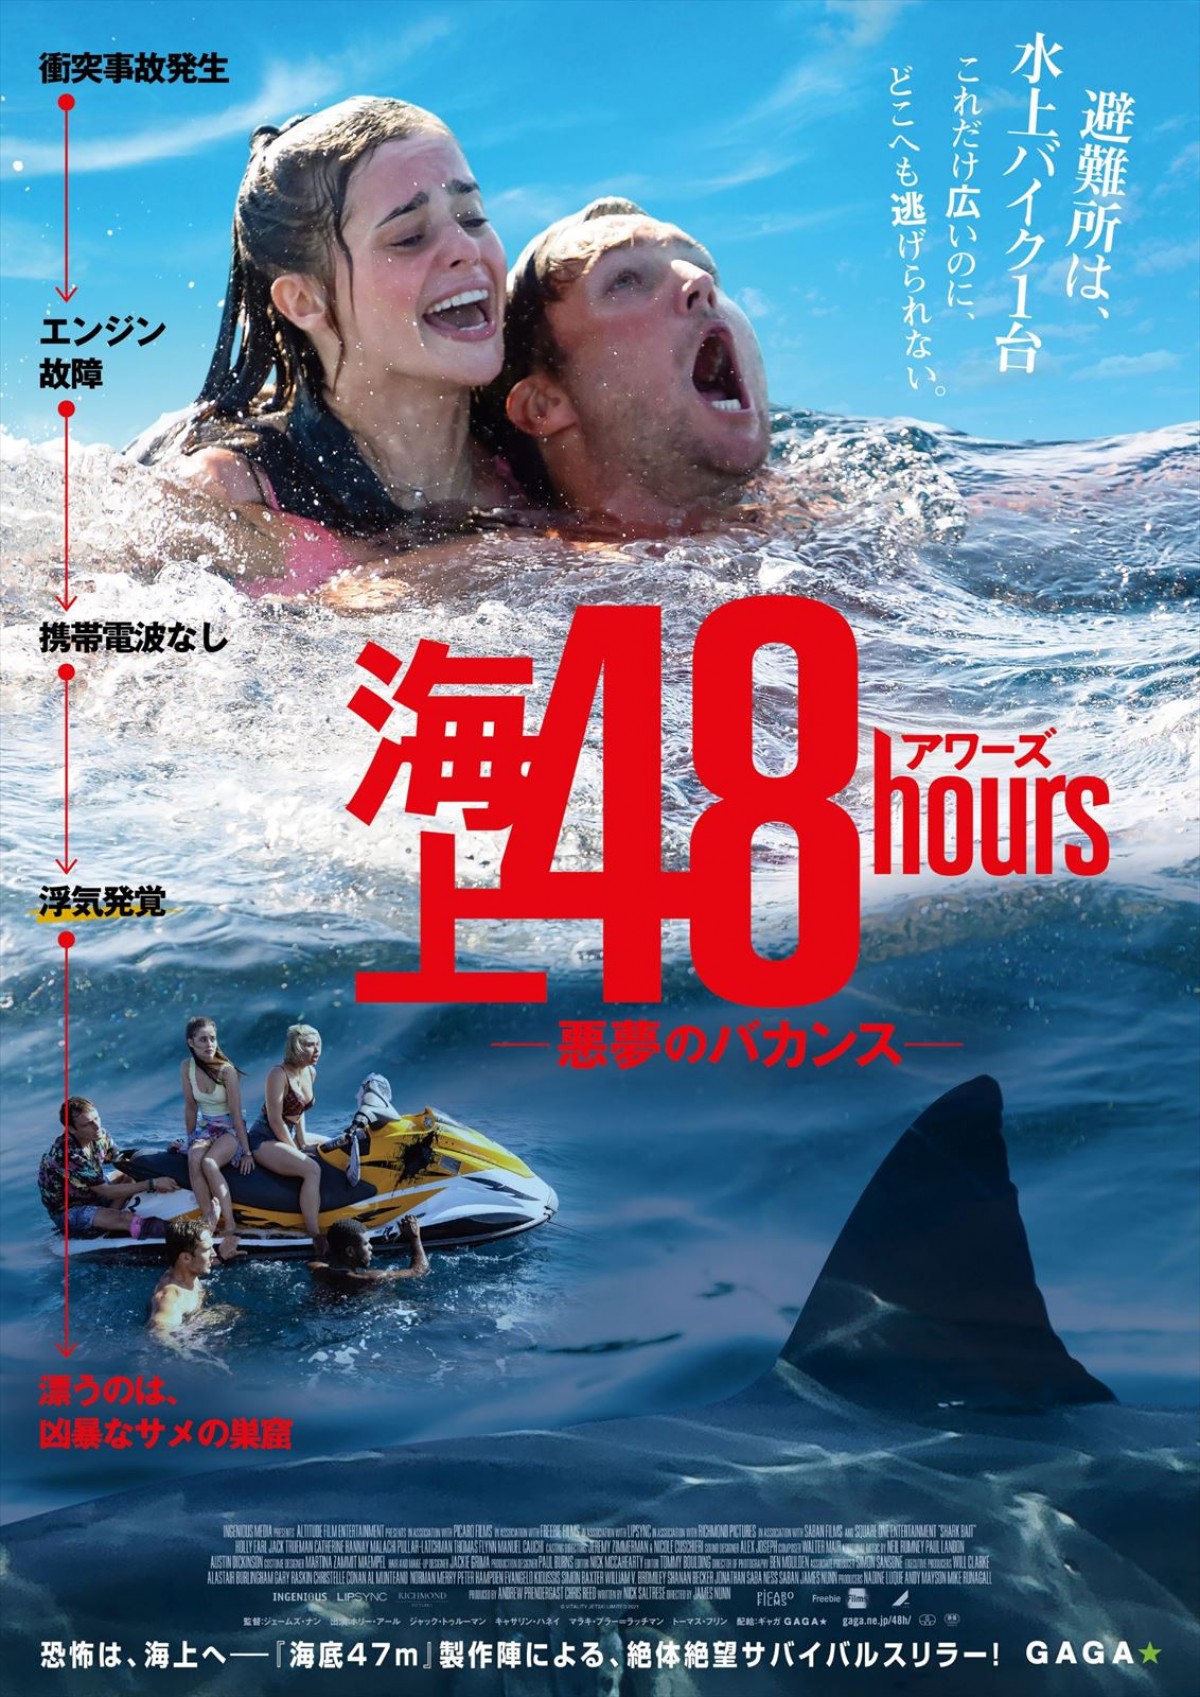 サメと裏切りのサバイバル『海上48hours ―悪夢のバカンス―』公開決定＆予告解禁